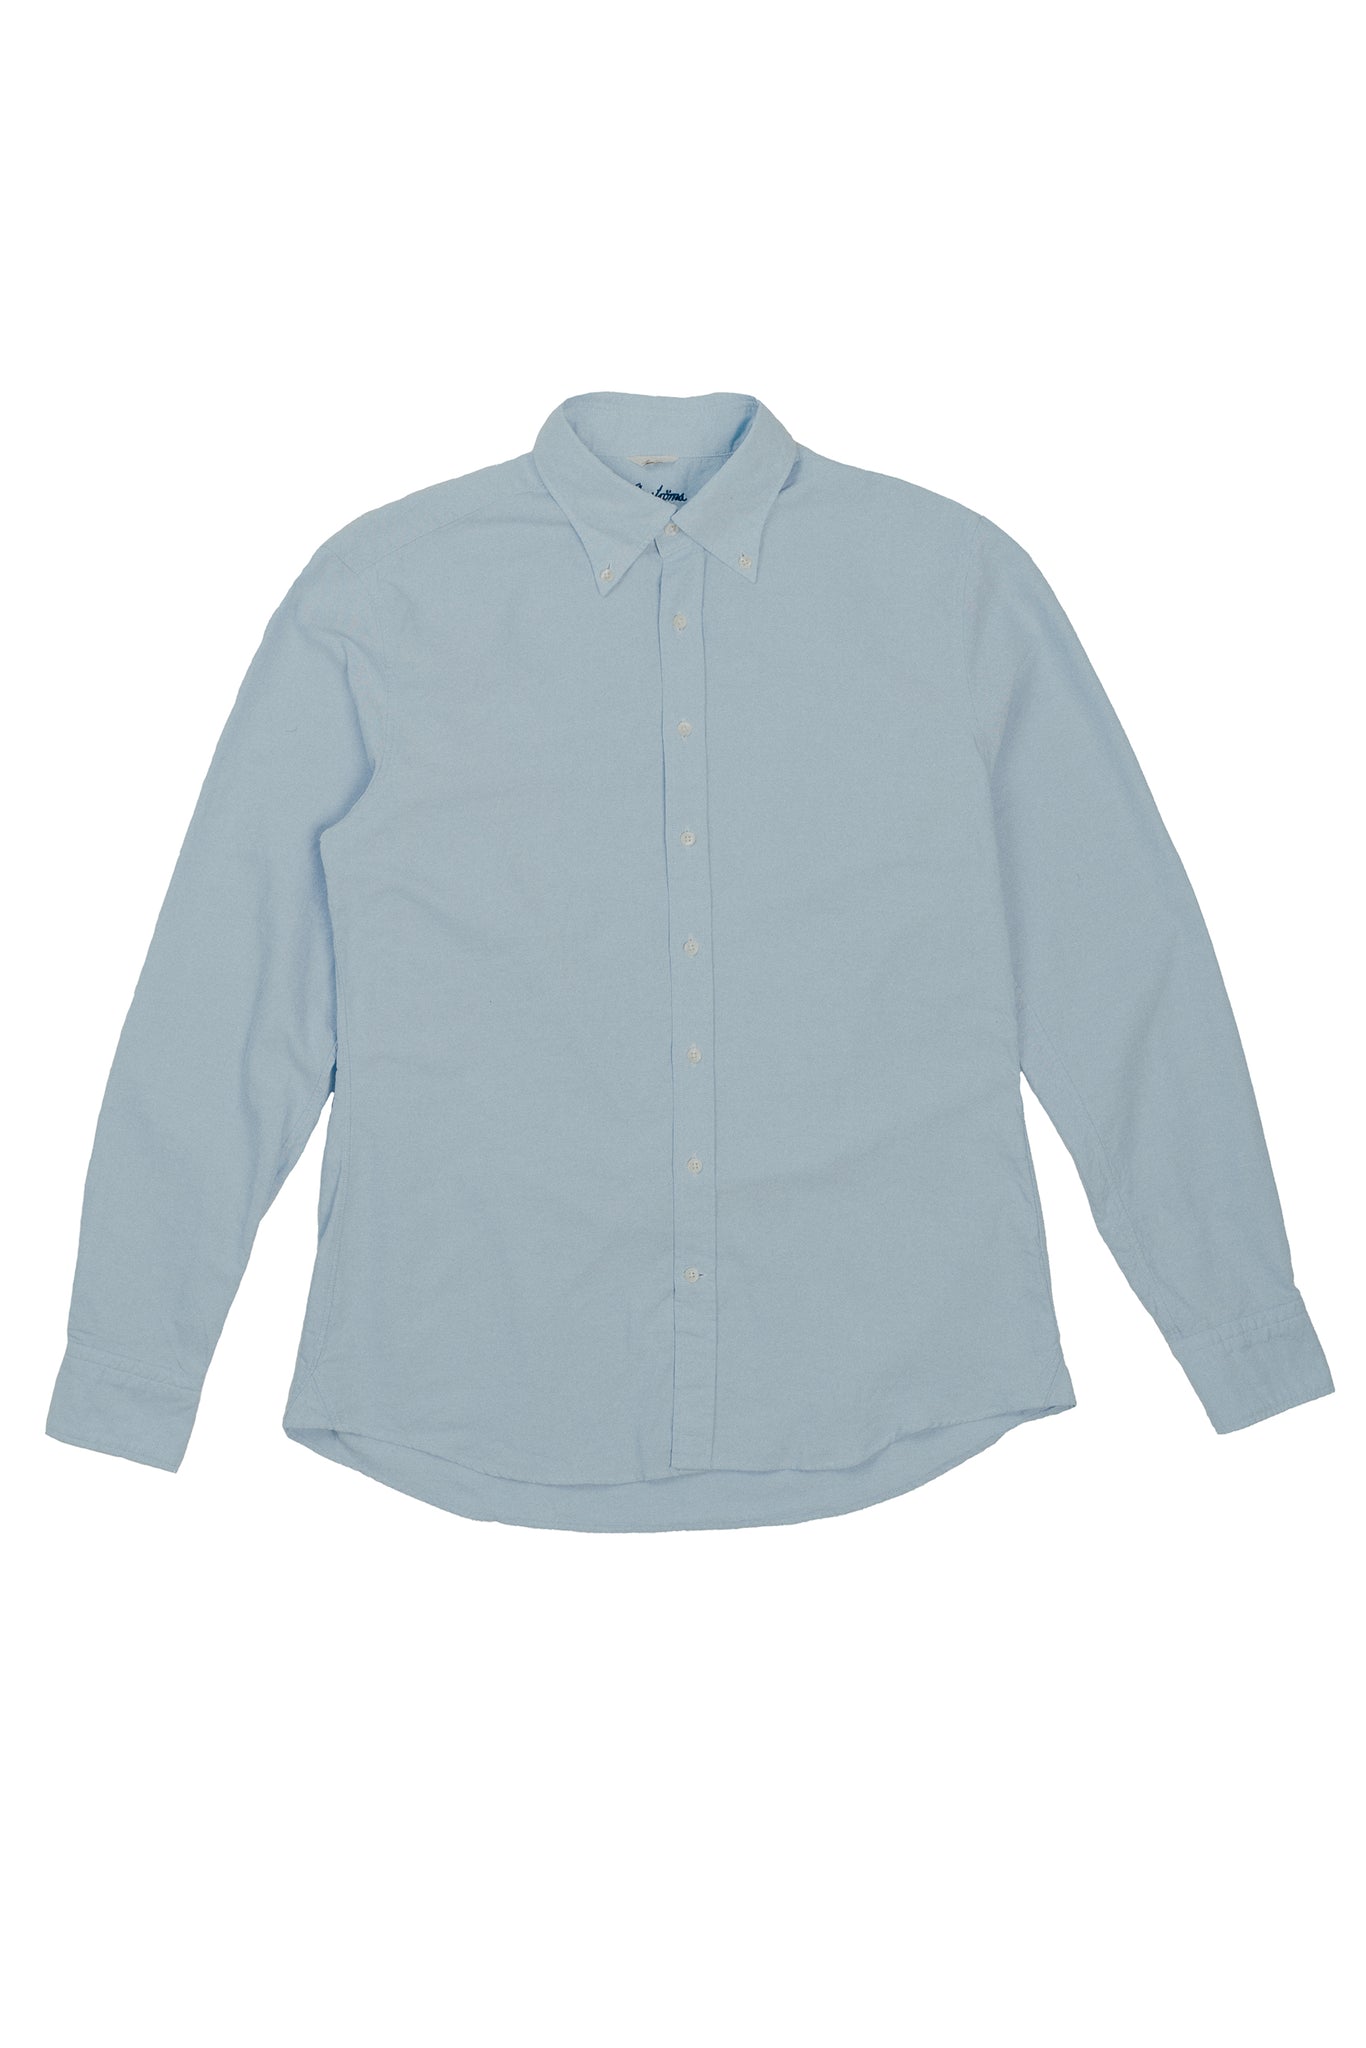 Stenströms Light Blue Casual Oxford Shirt